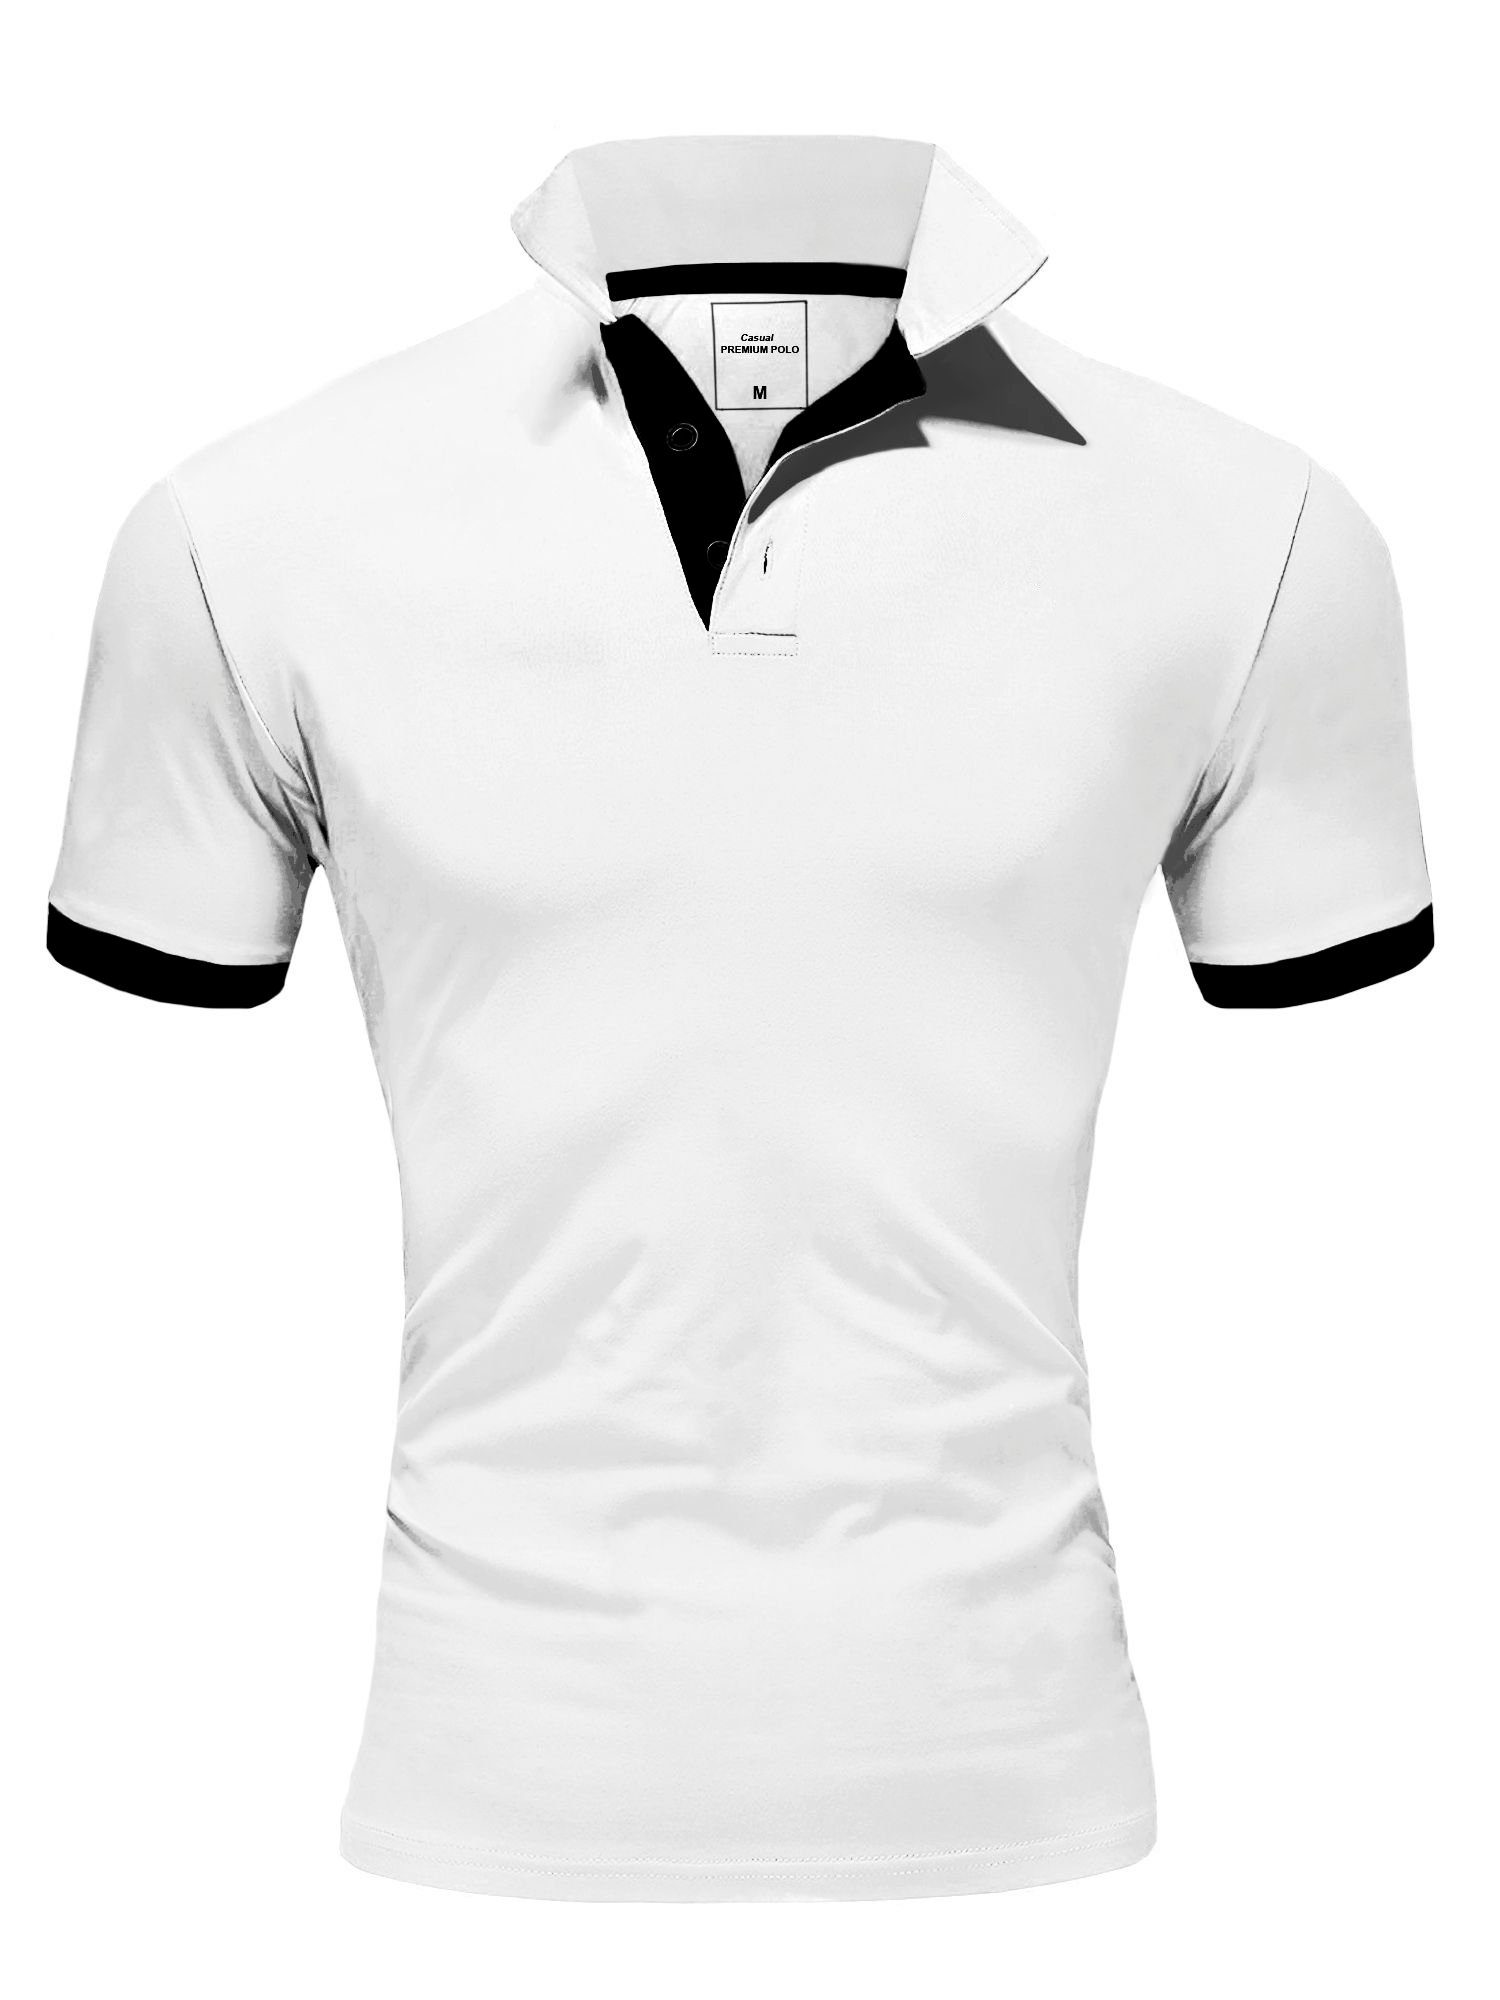 Weiße Poloshirts online kaufen » Weiße Polohemden | OTTO